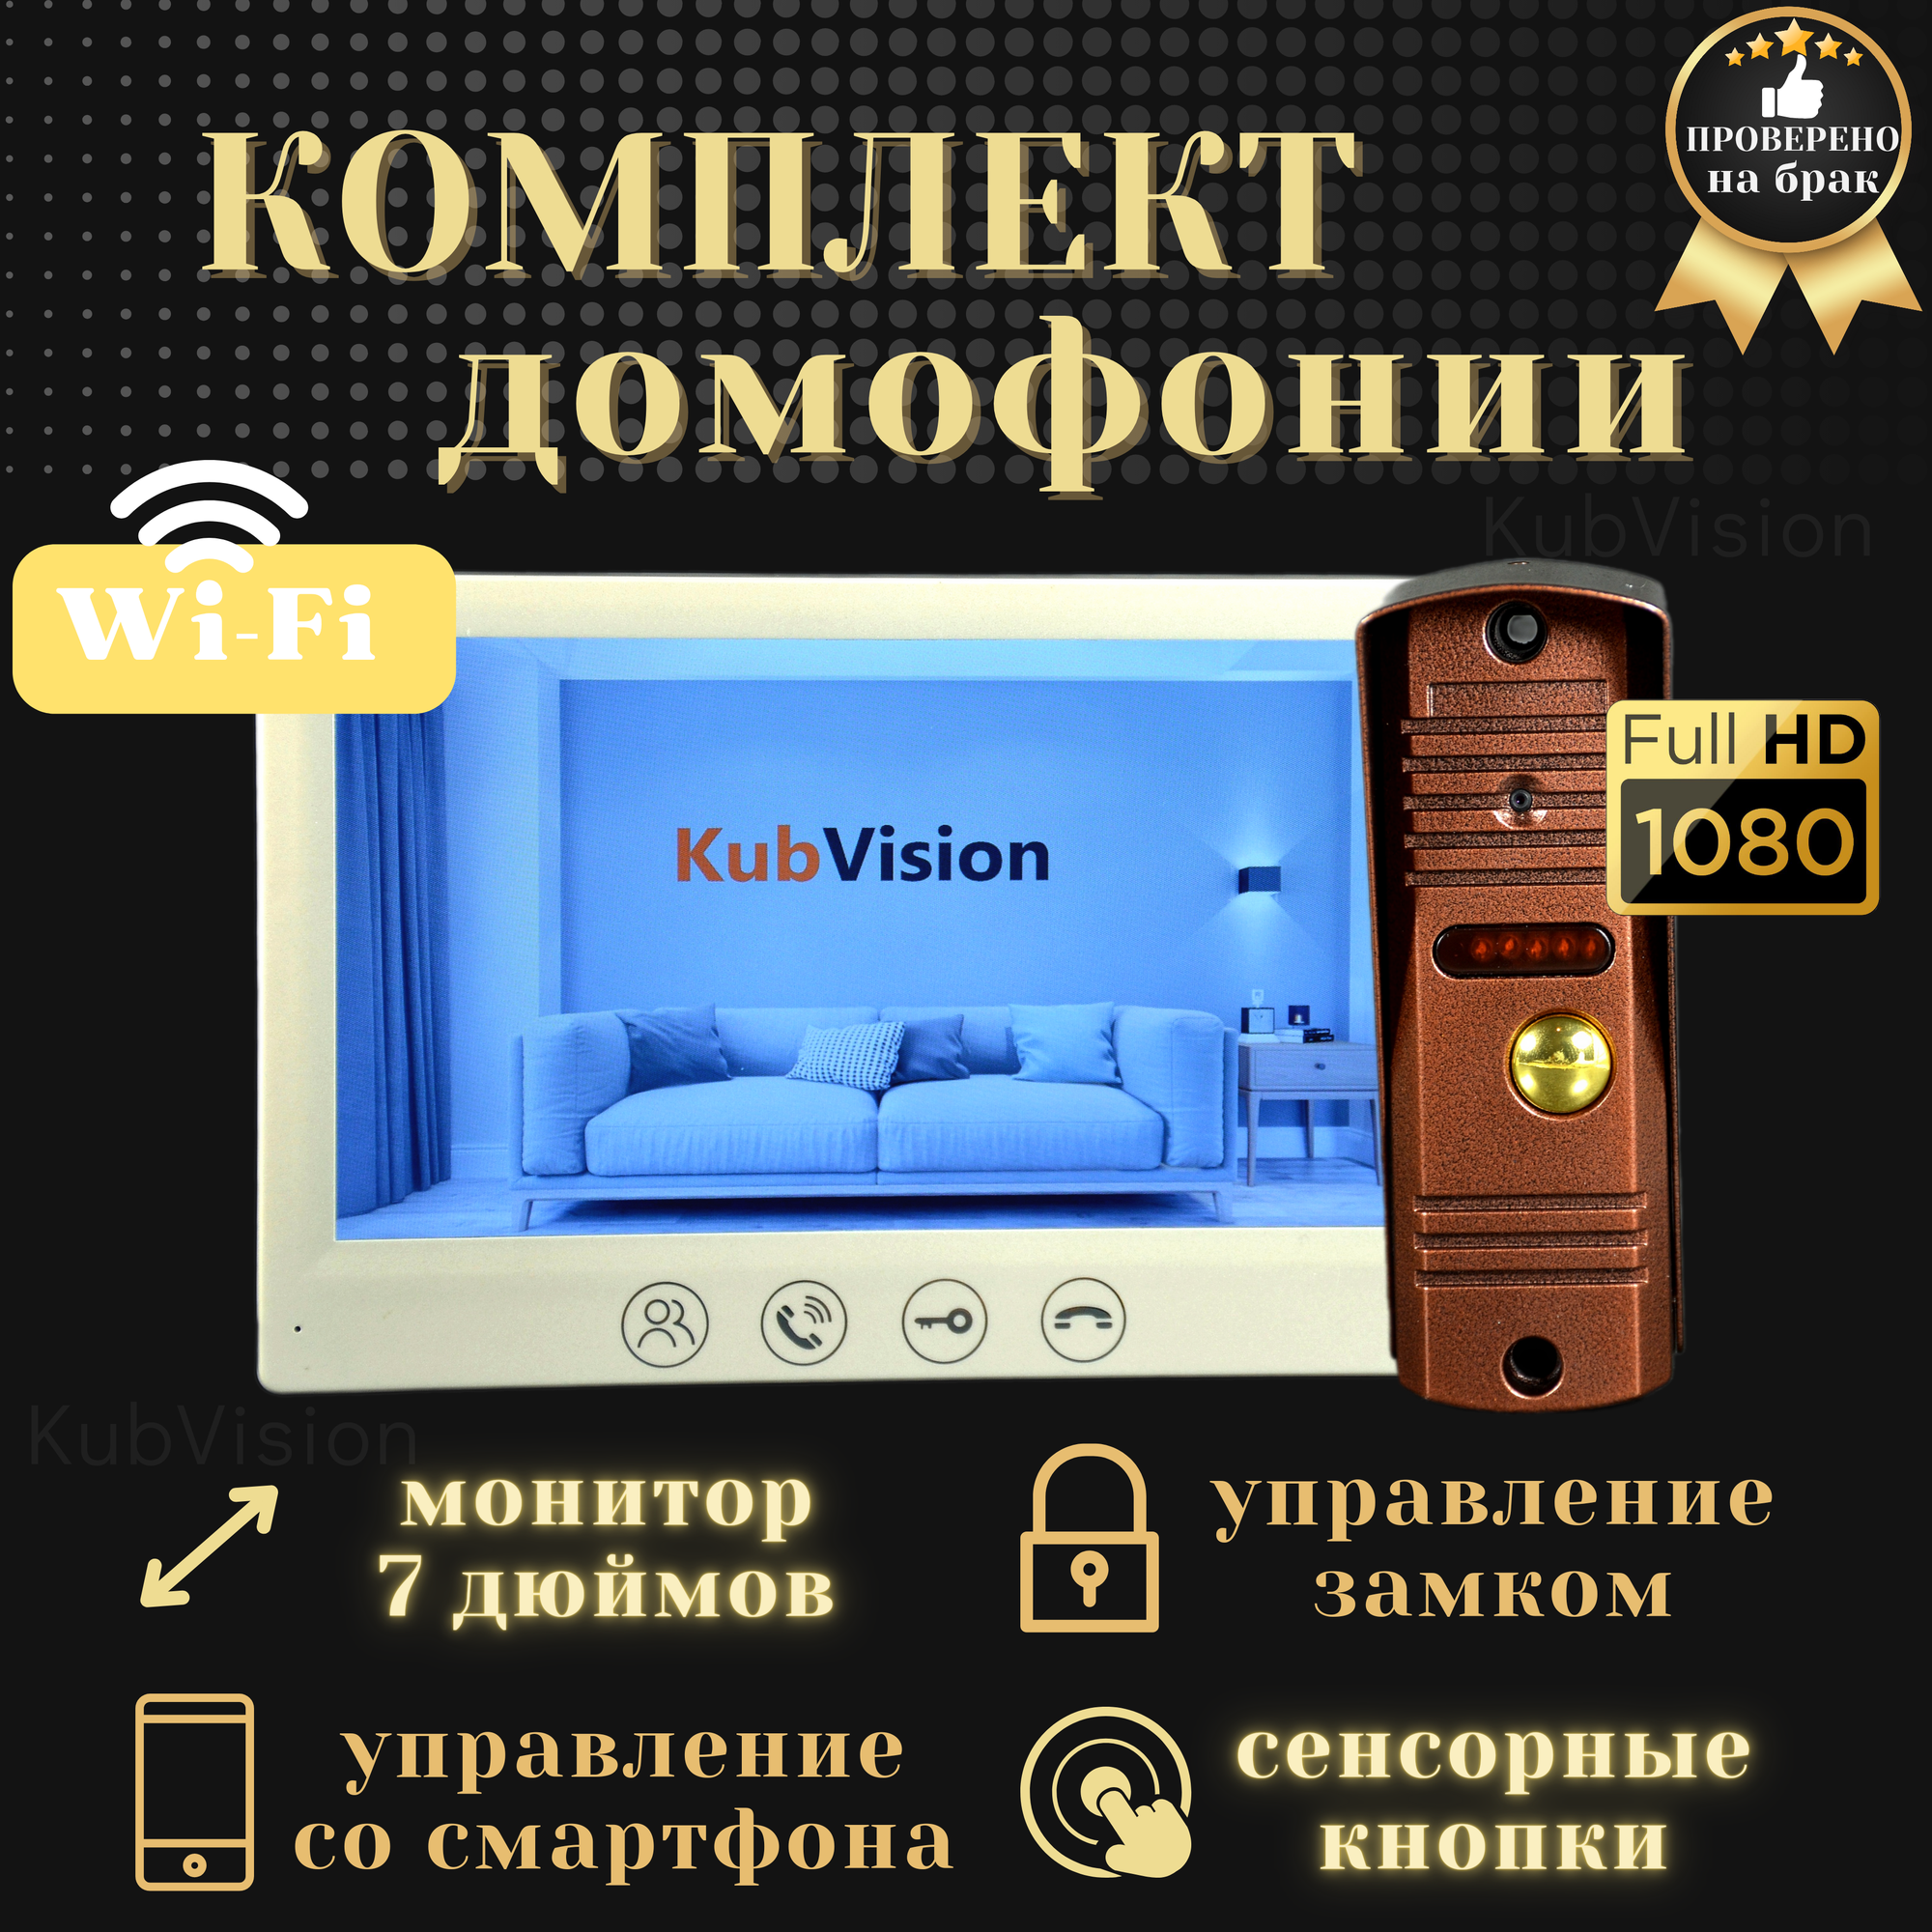 Комплект домофон с вызывной панелью KubVision 95712FH+94201 Wi-Fi, видеодомофон и вызывная панель, для дома, для квартиры, 7 дюймов